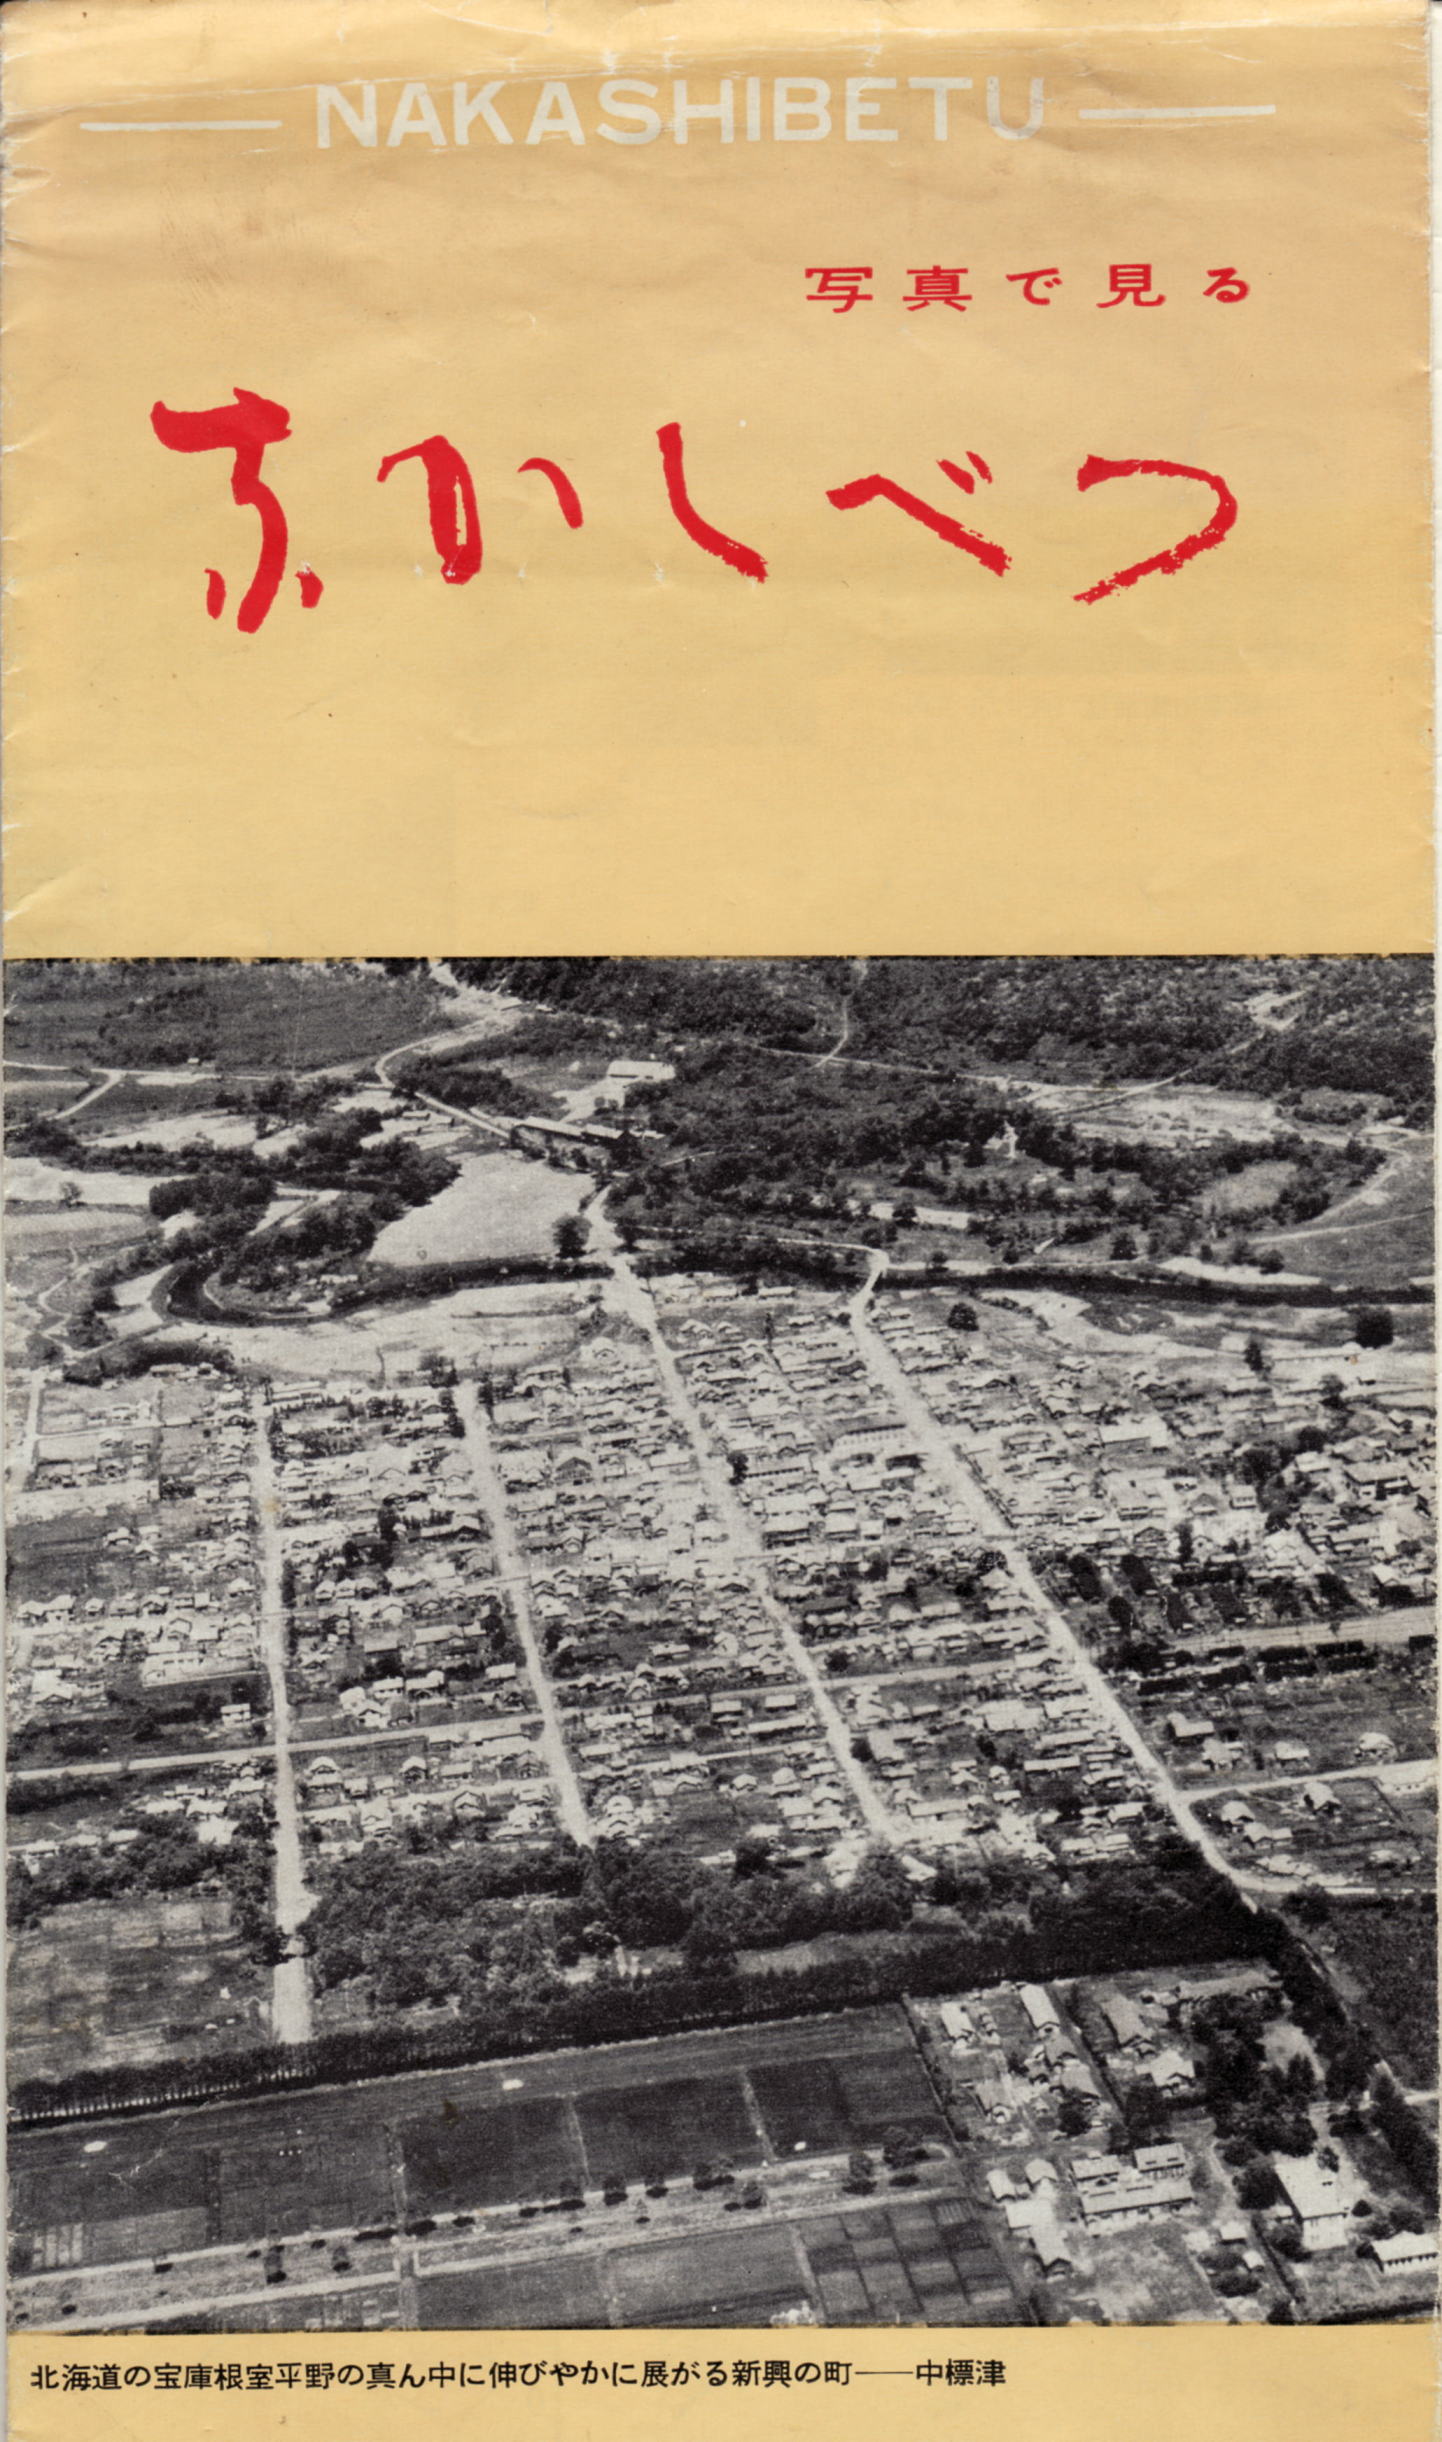 昭和３５年「 写真で見る なかしべつ」 : ふるさとの礎 なかしべつ伝成館